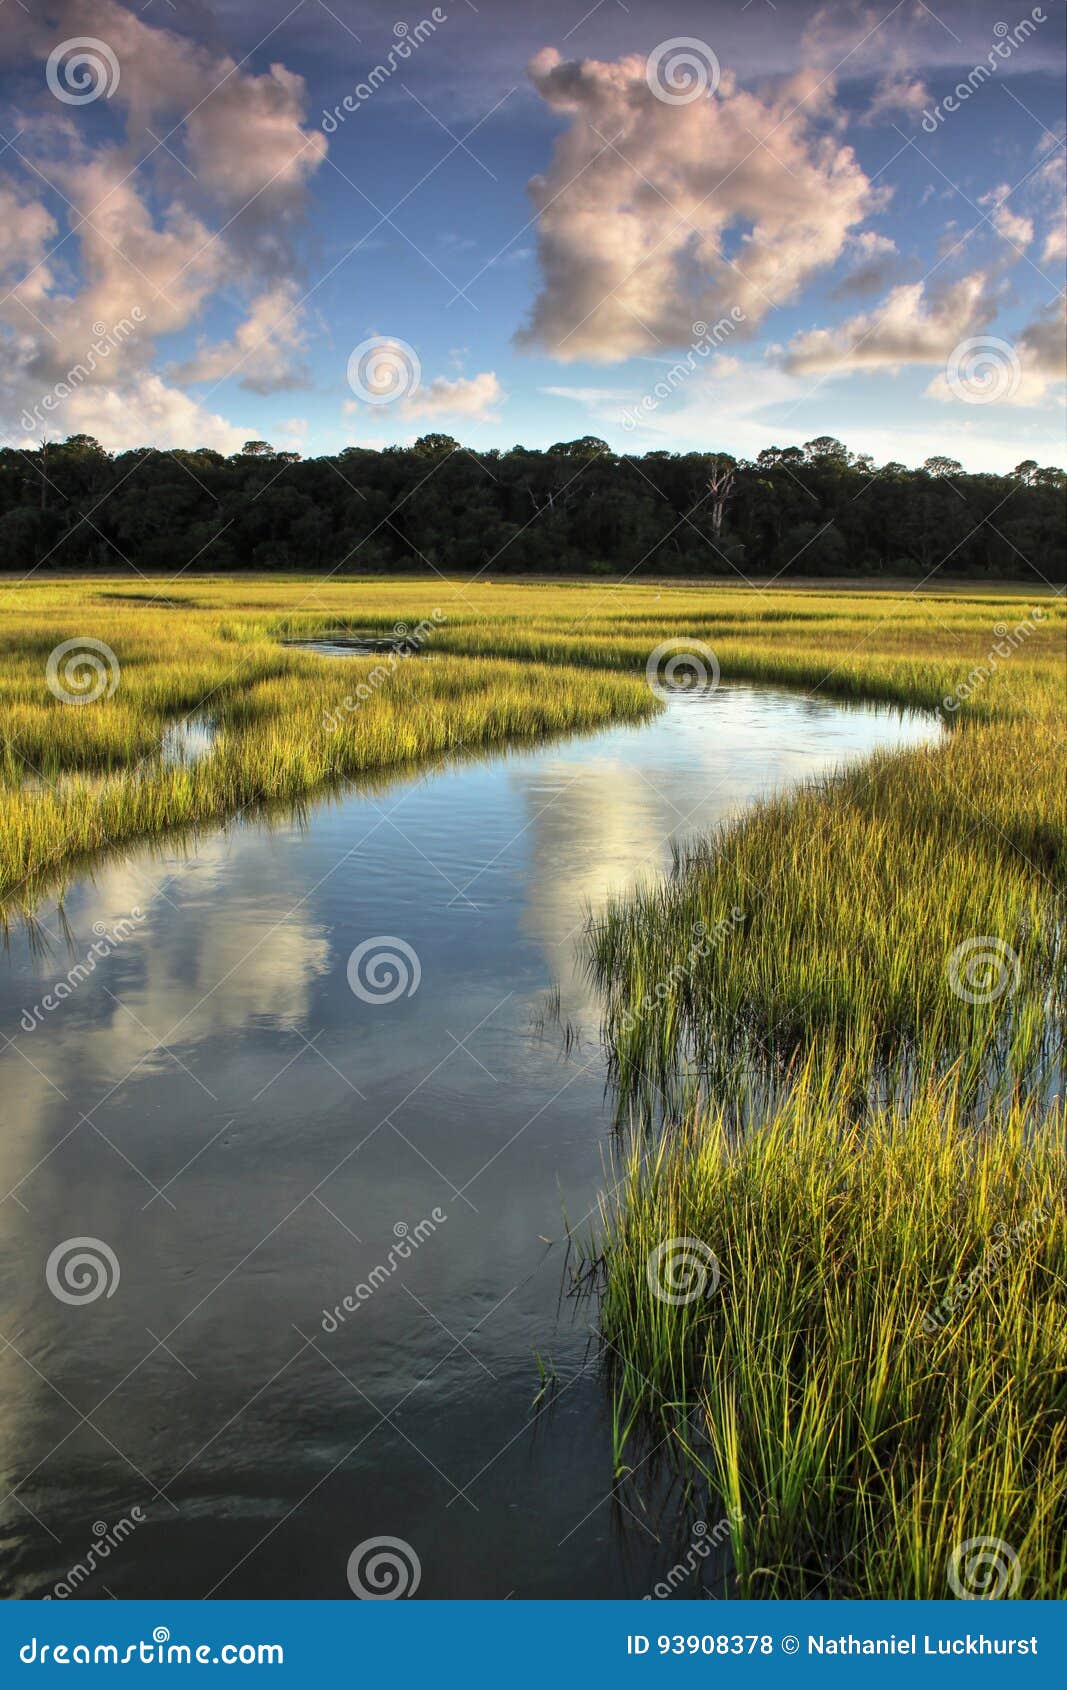 winding salt marsh